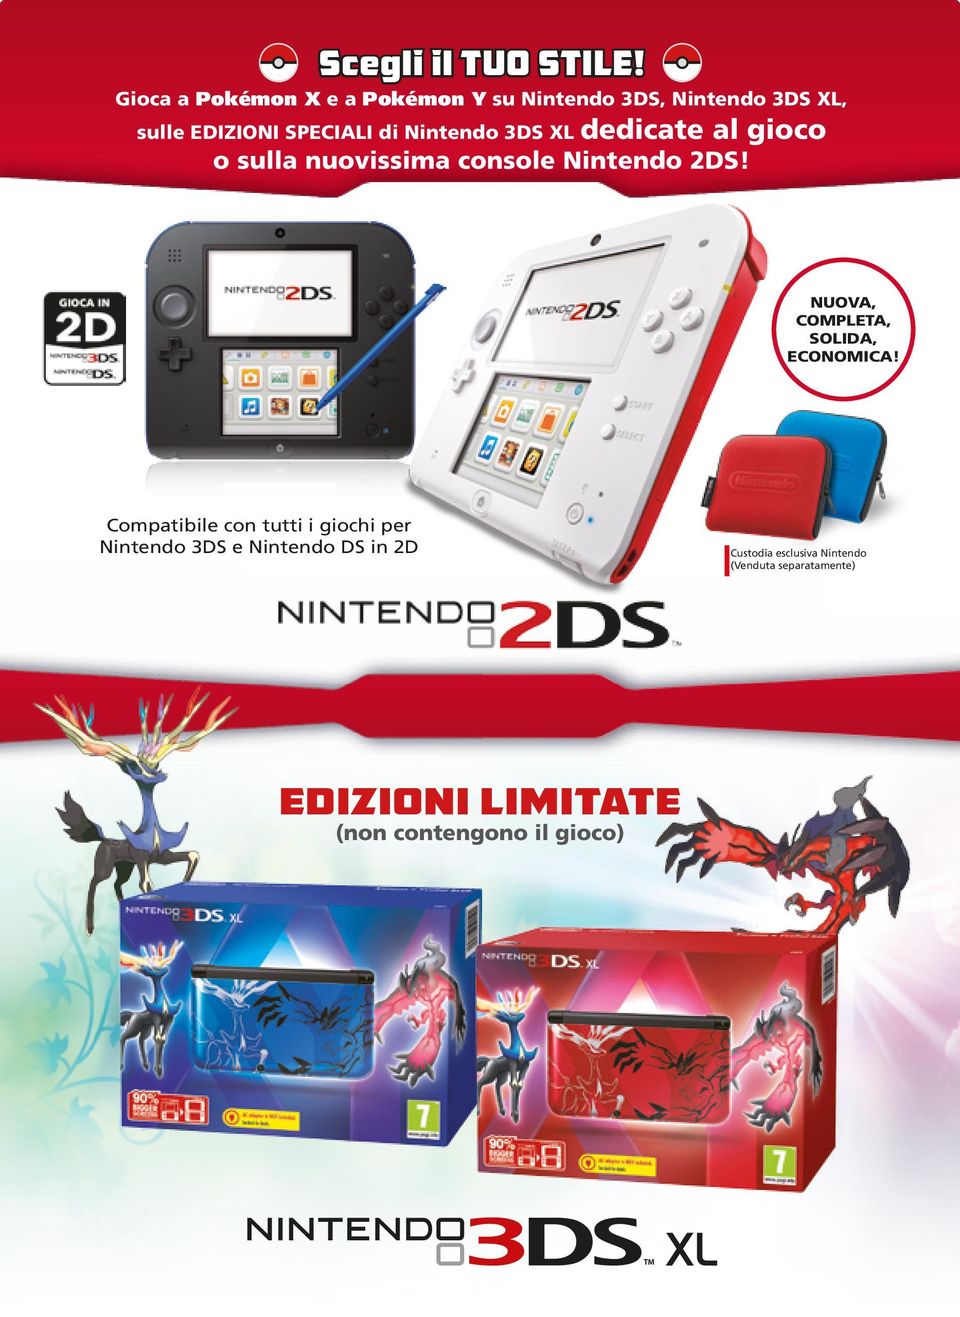 Nintendo 3DS XL dedicate al gioco o sulla nuovissima console Nintendo 2DS!